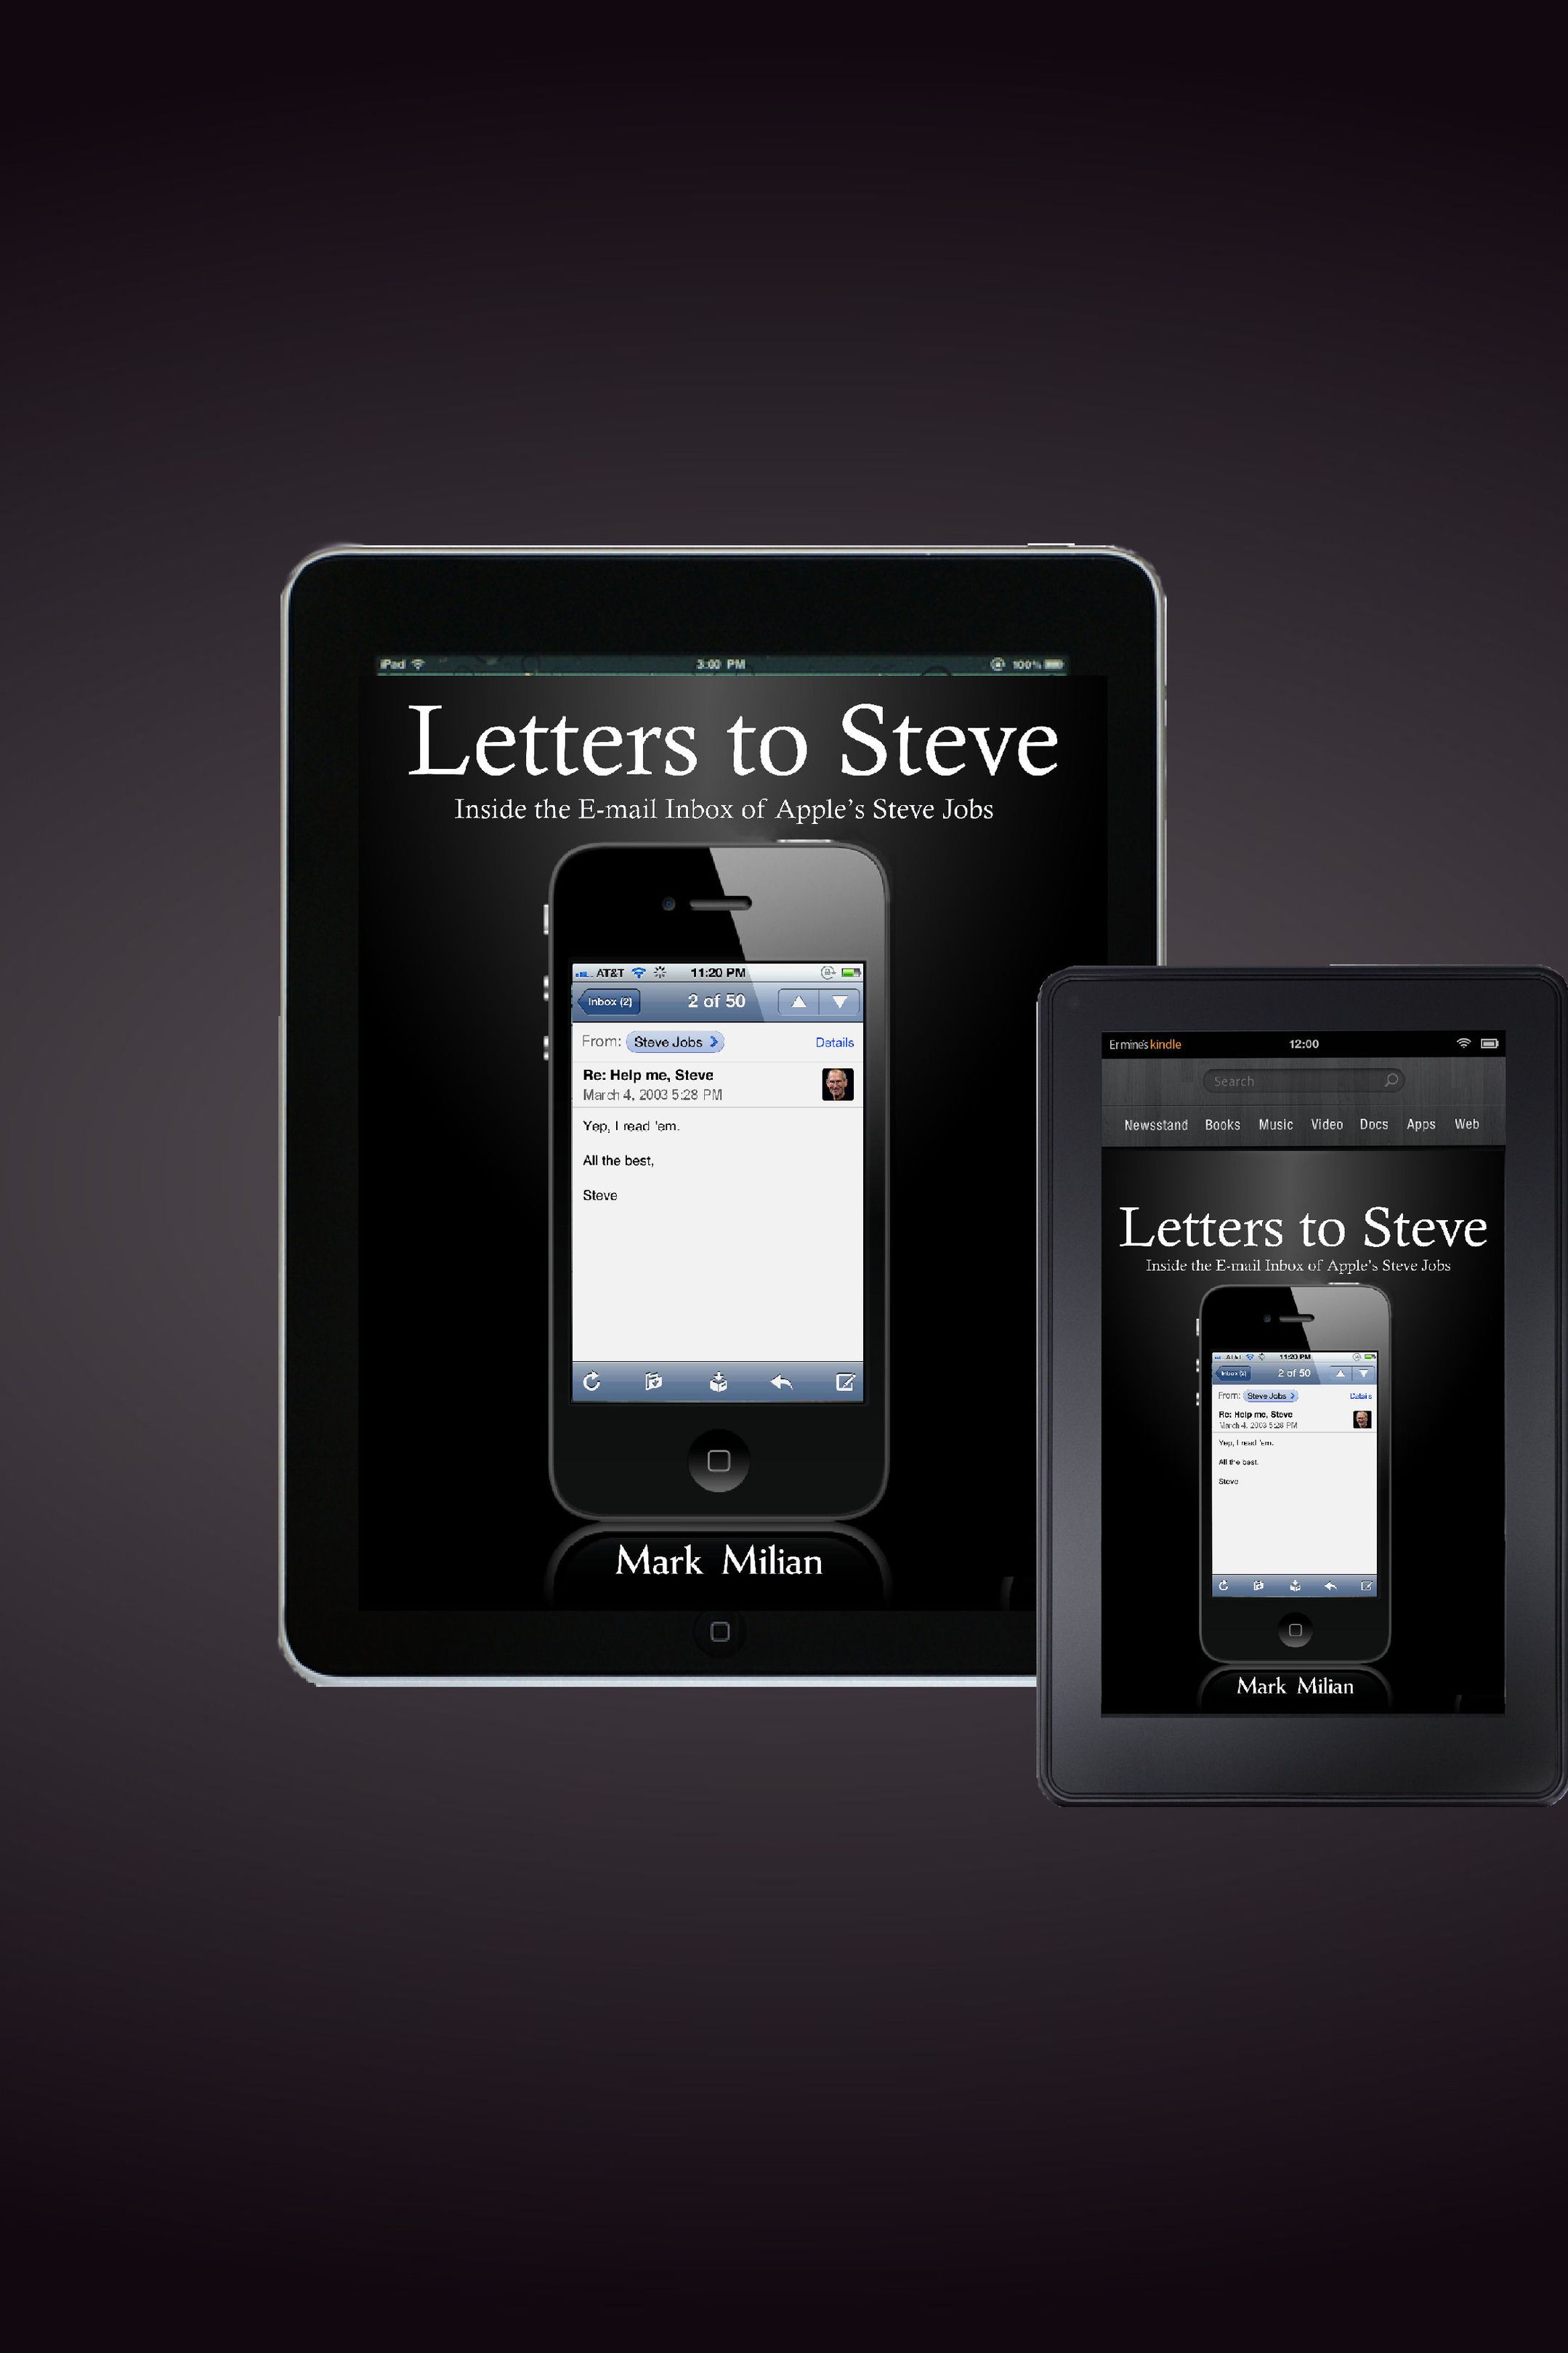 Steve Jobs Email: Bạn có muốn biết về những câu email của Steve Jobs khi ông còn sống? Hãy xem hình ảnh liên quan đến Steve Jobs Email. Đó là những câu email độc đáo và thú vị, giúp bạn hiểu rõ hơn về tư duy và triết lý của Steve Jobs. Hãy khám phá những bí mật của cuộc đời Steve Jobs thông qua những câu email của ông.